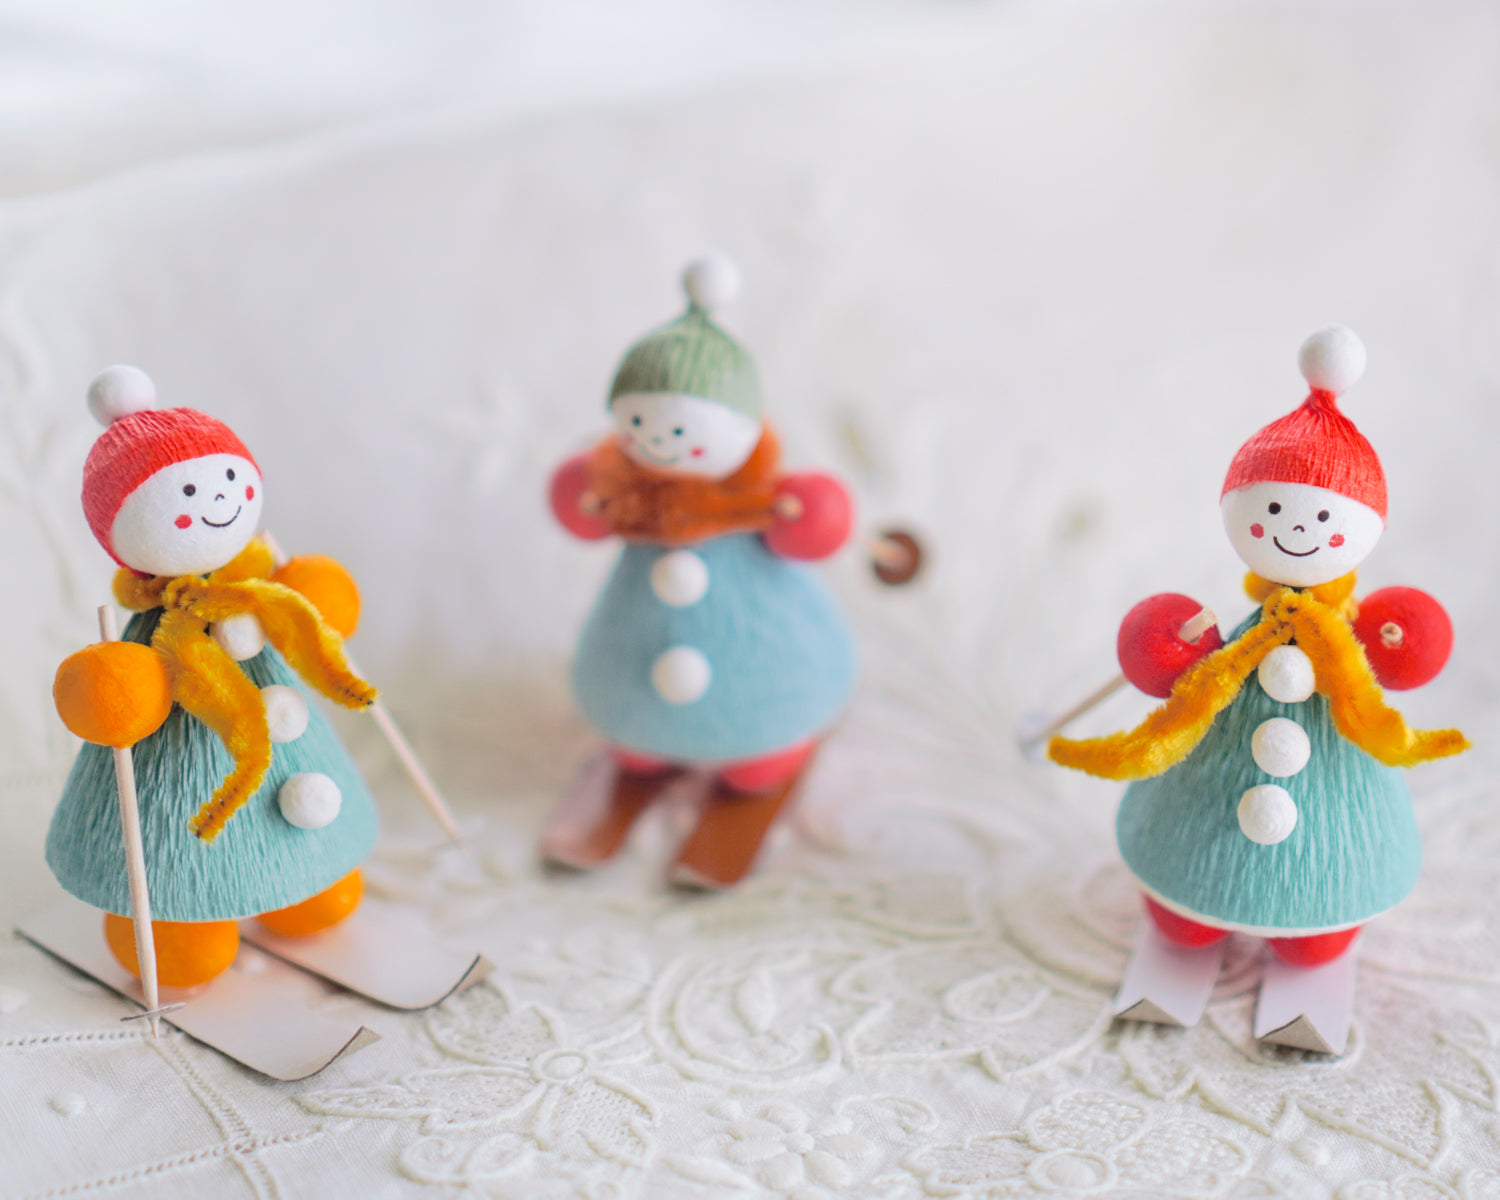 Snow Day Ski Friends - Vintage Style Spun Cotton Figures